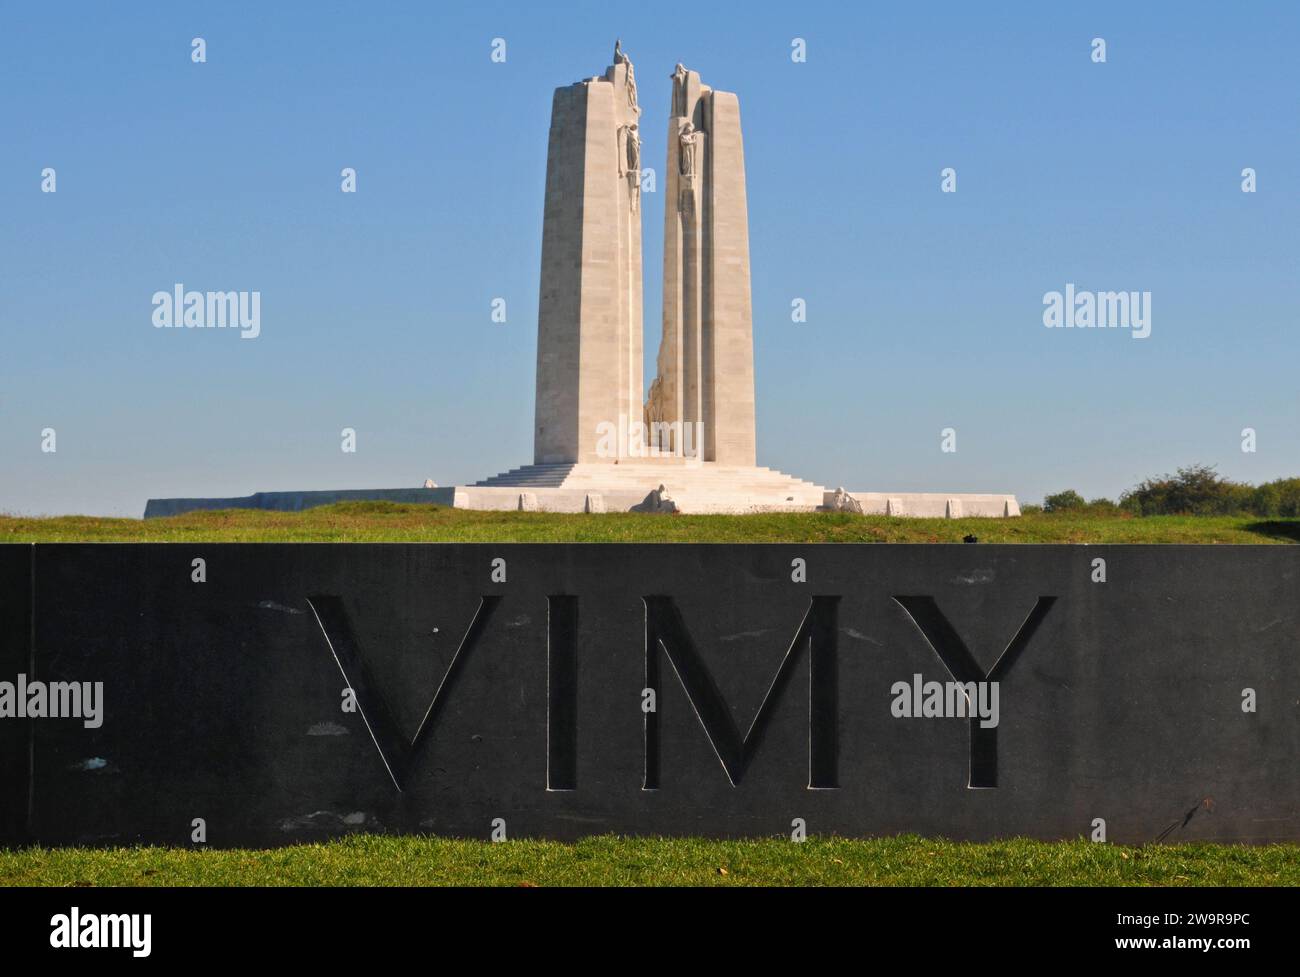 Il Canadian National Vimy Memorial, progettato dallo scultore Walter Allward, segna il sito della battaglia di Vimy Ridge, in Francia, durante la prima guerra mondiale. Foto Stock